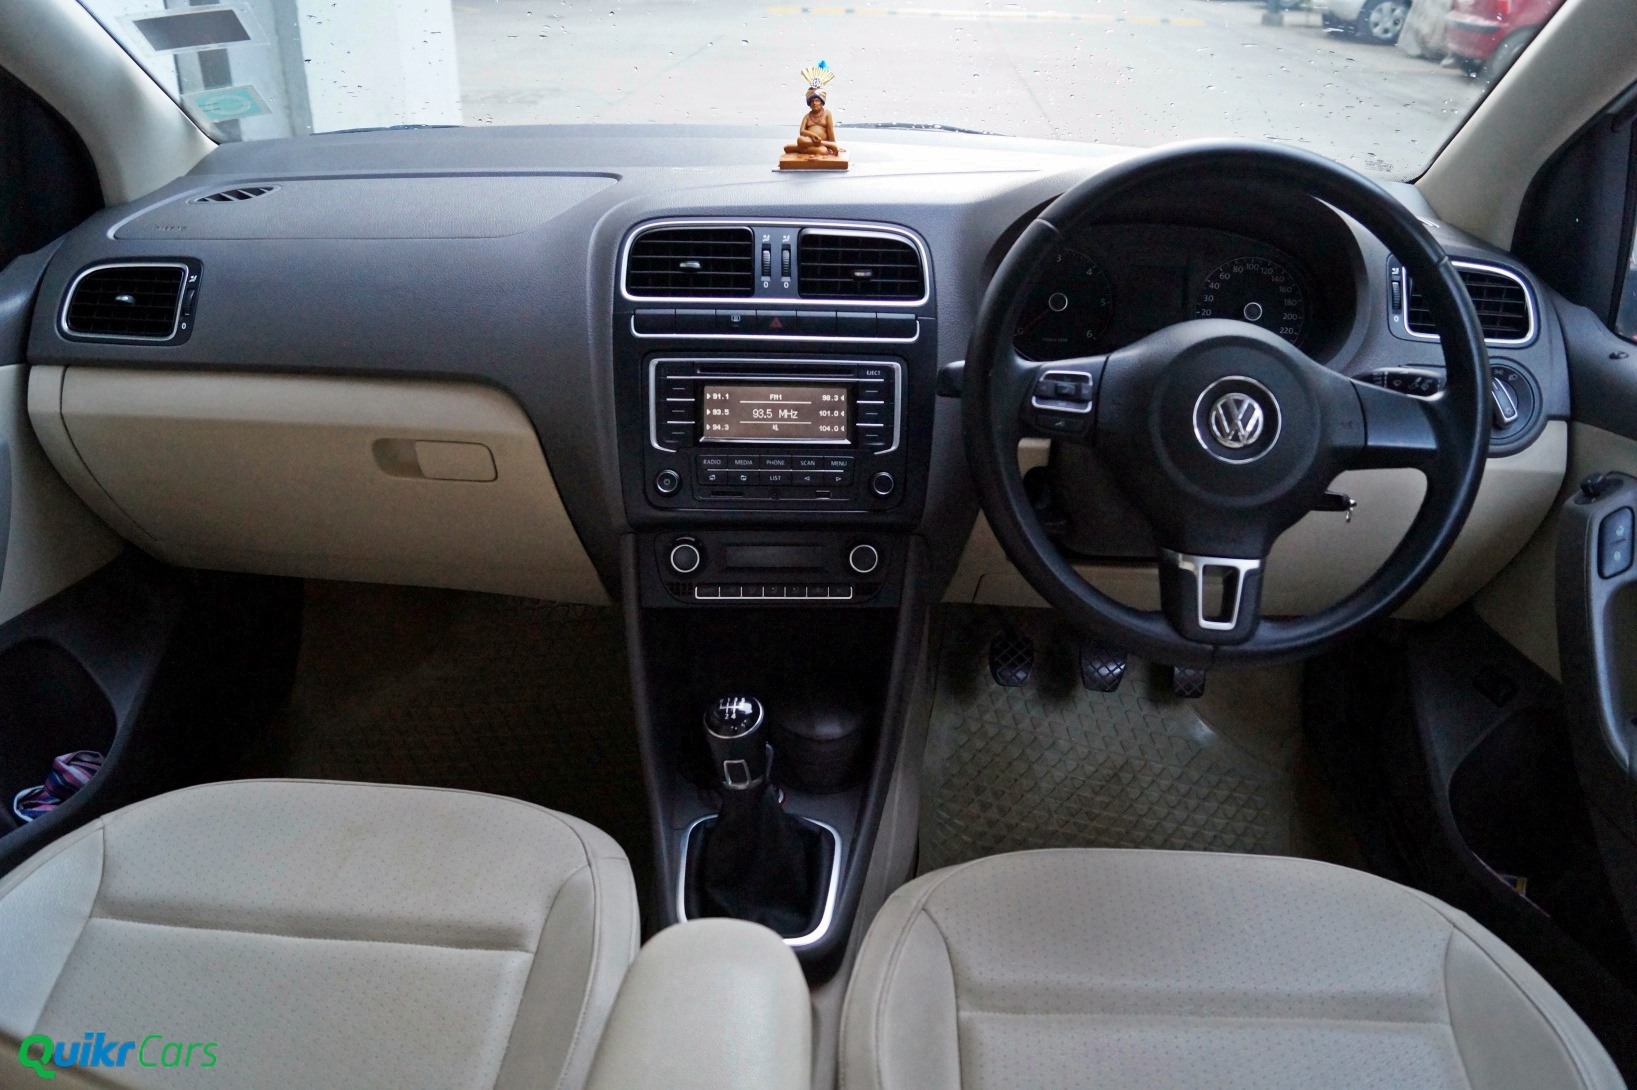 VW Vento interiors